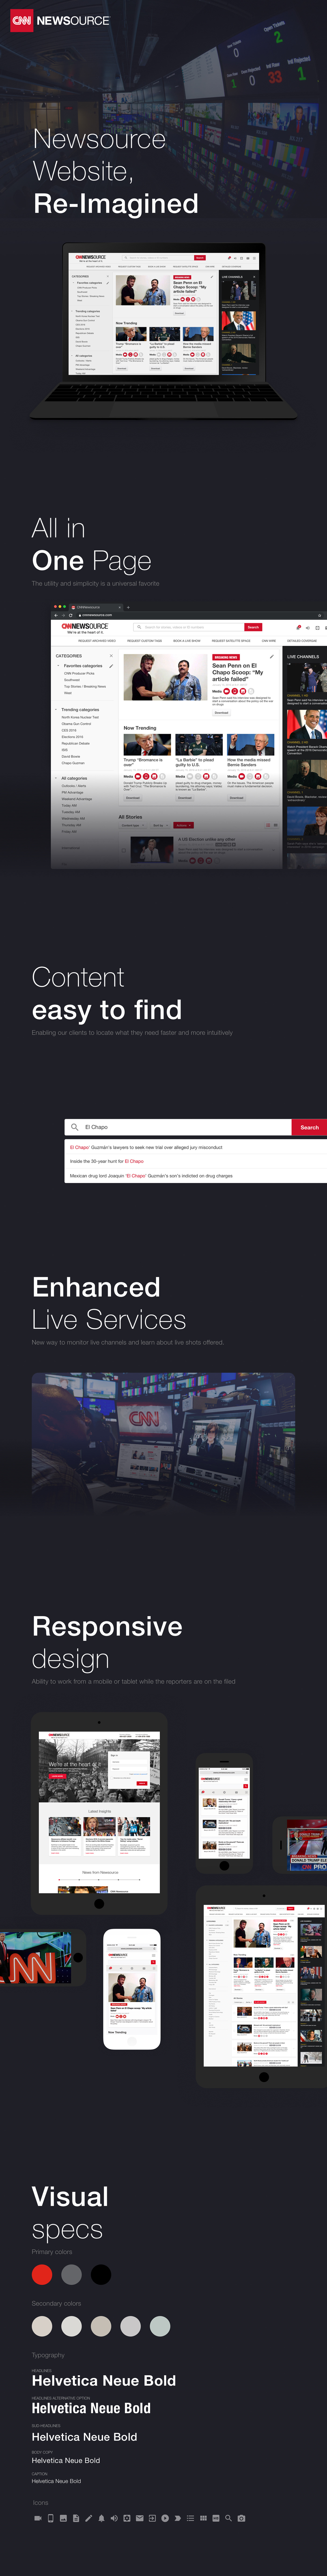 CNN Website design Responsive news tablet mobile Web redesign